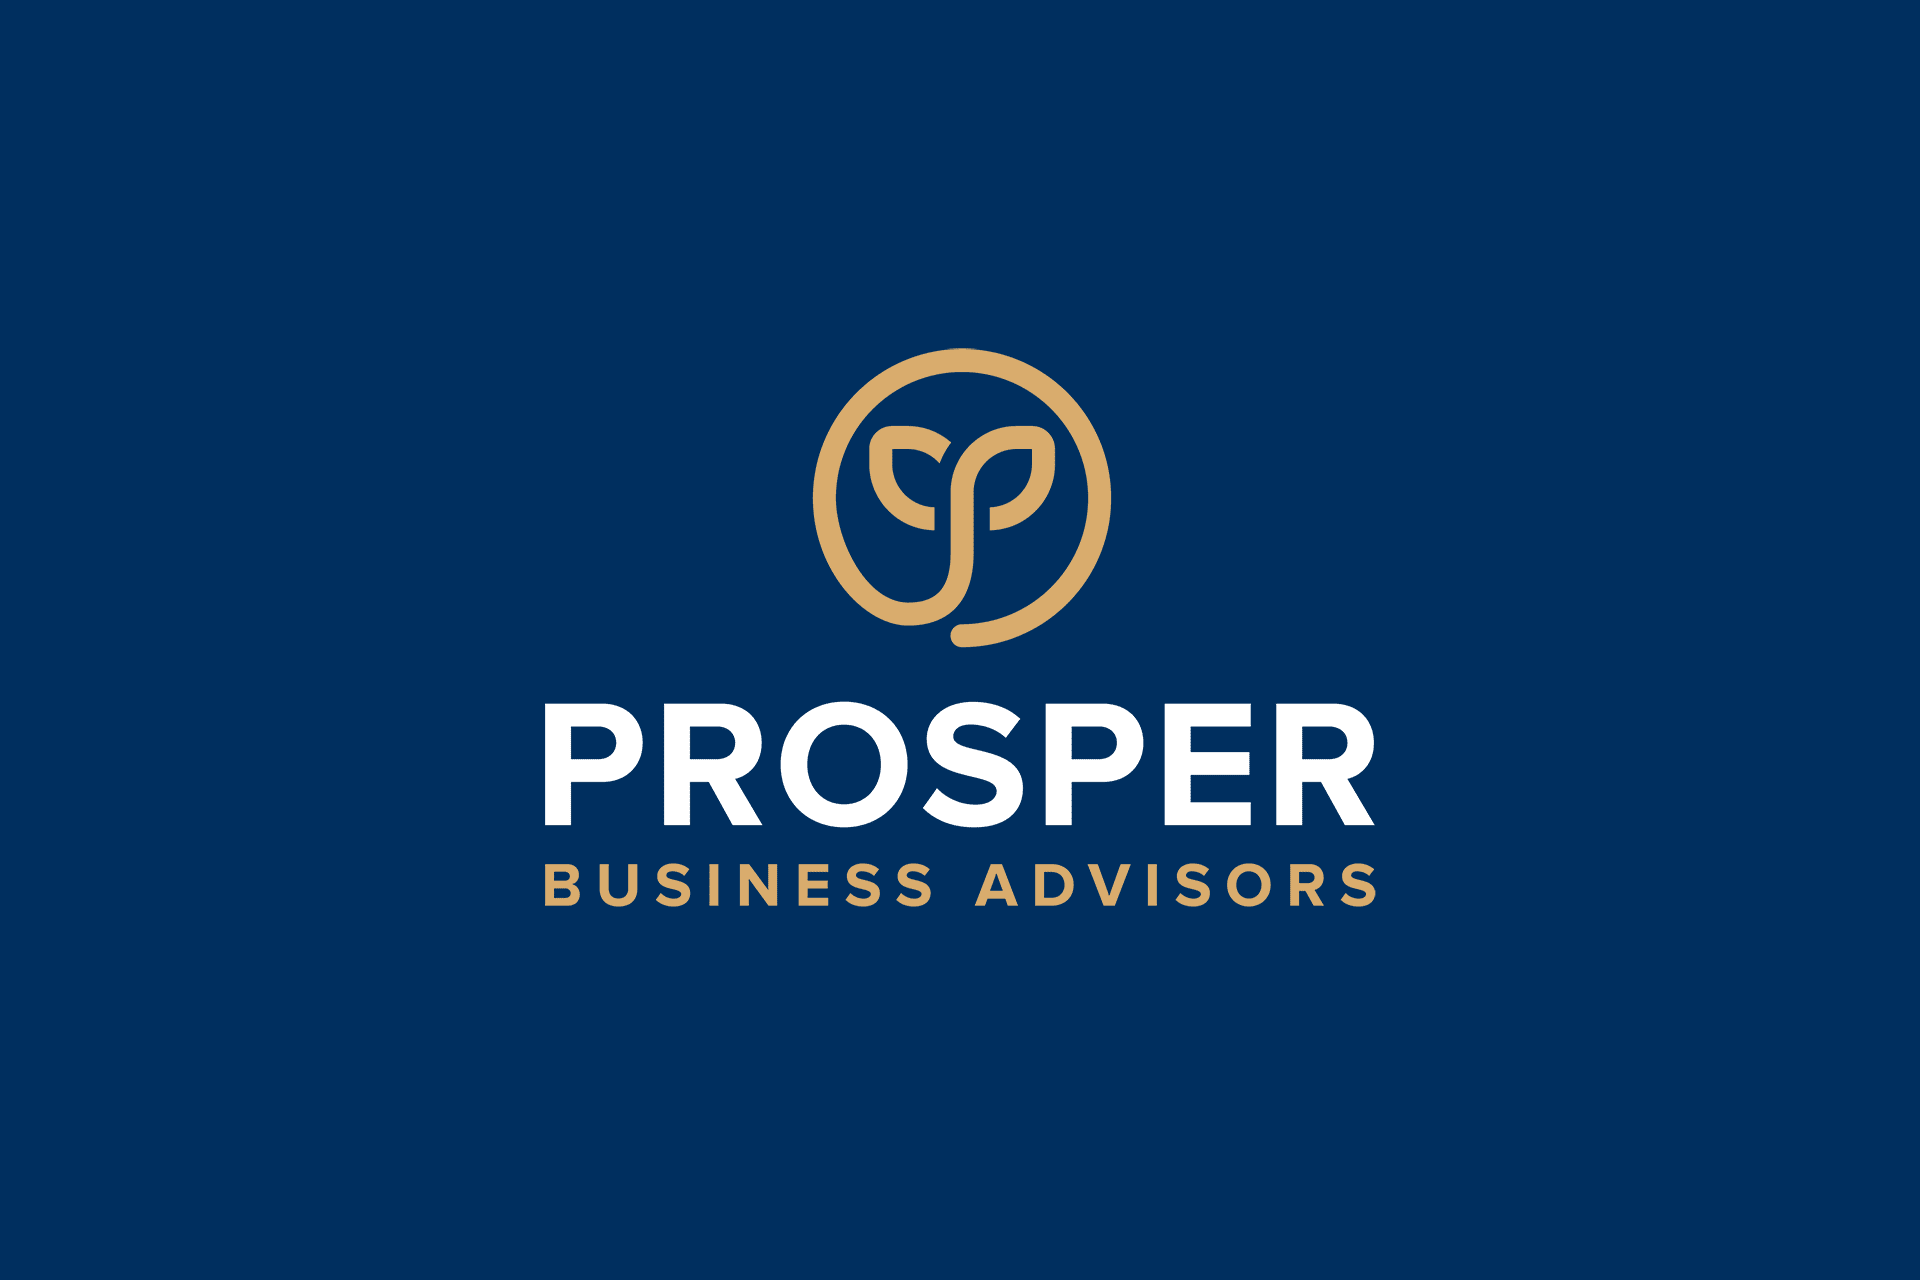 Prosper projekt Logo PNG Vector (AI) Free Download